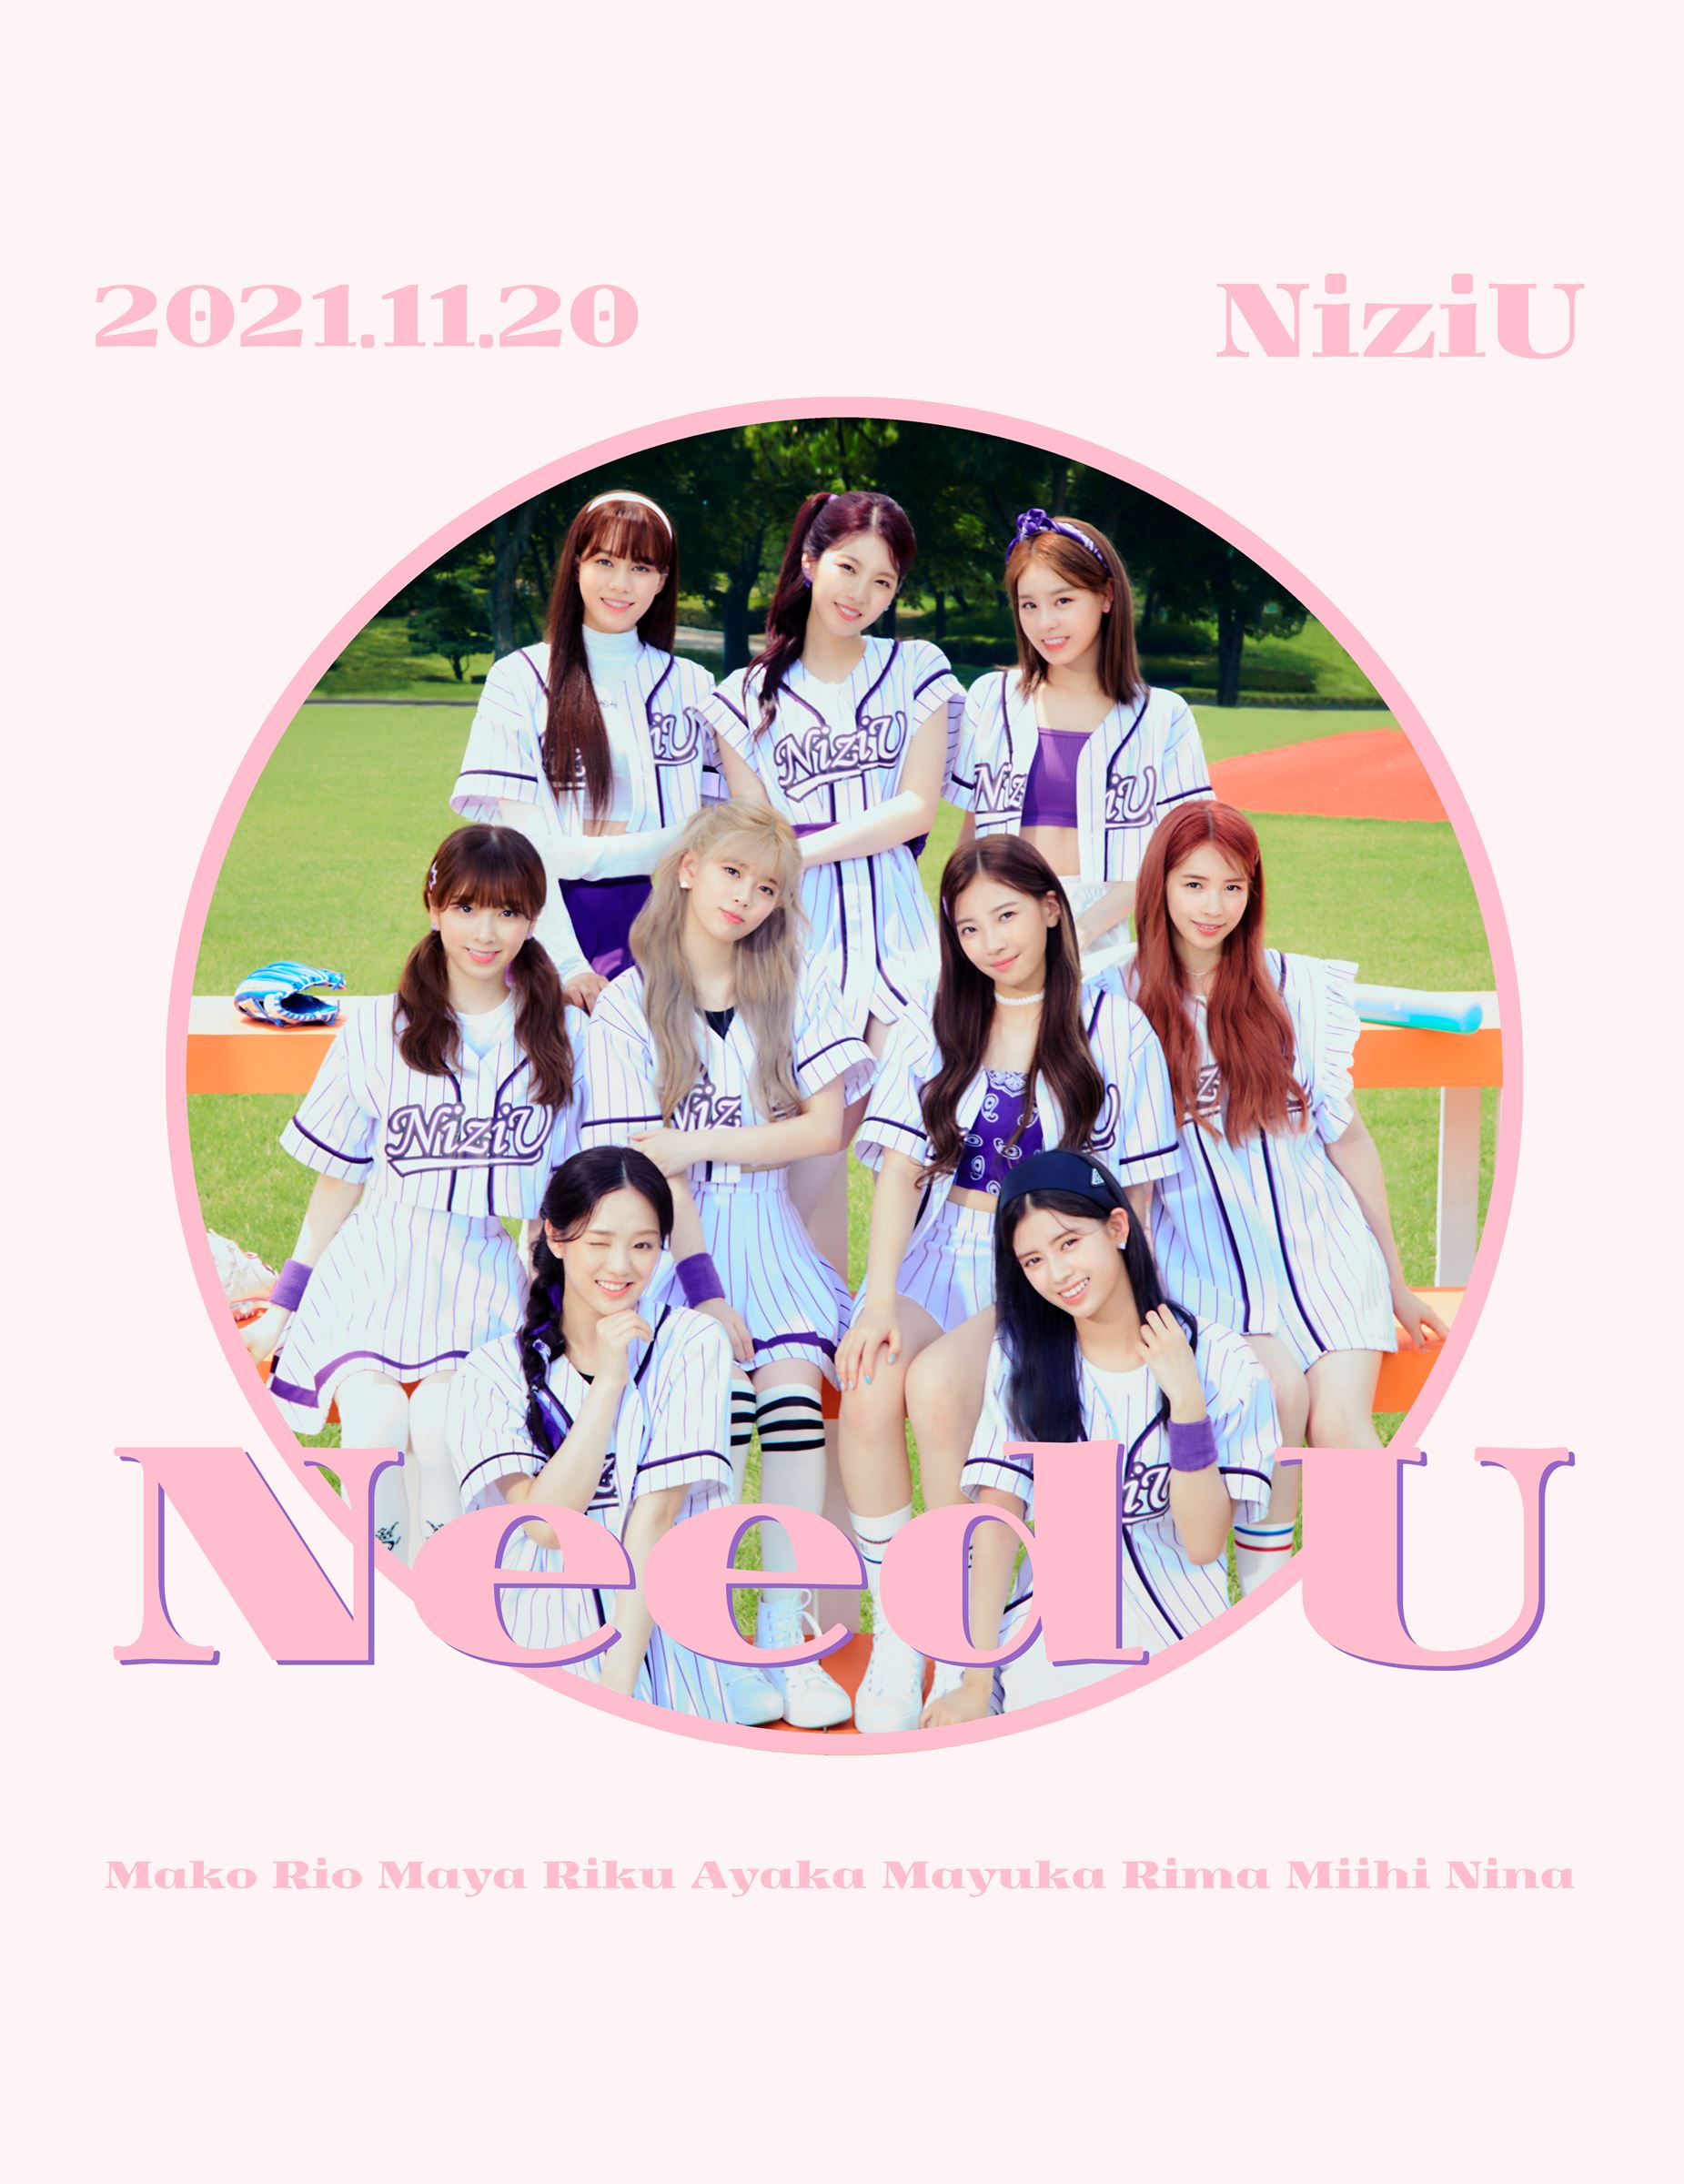 NiziU CD 9形態 - 邦楽